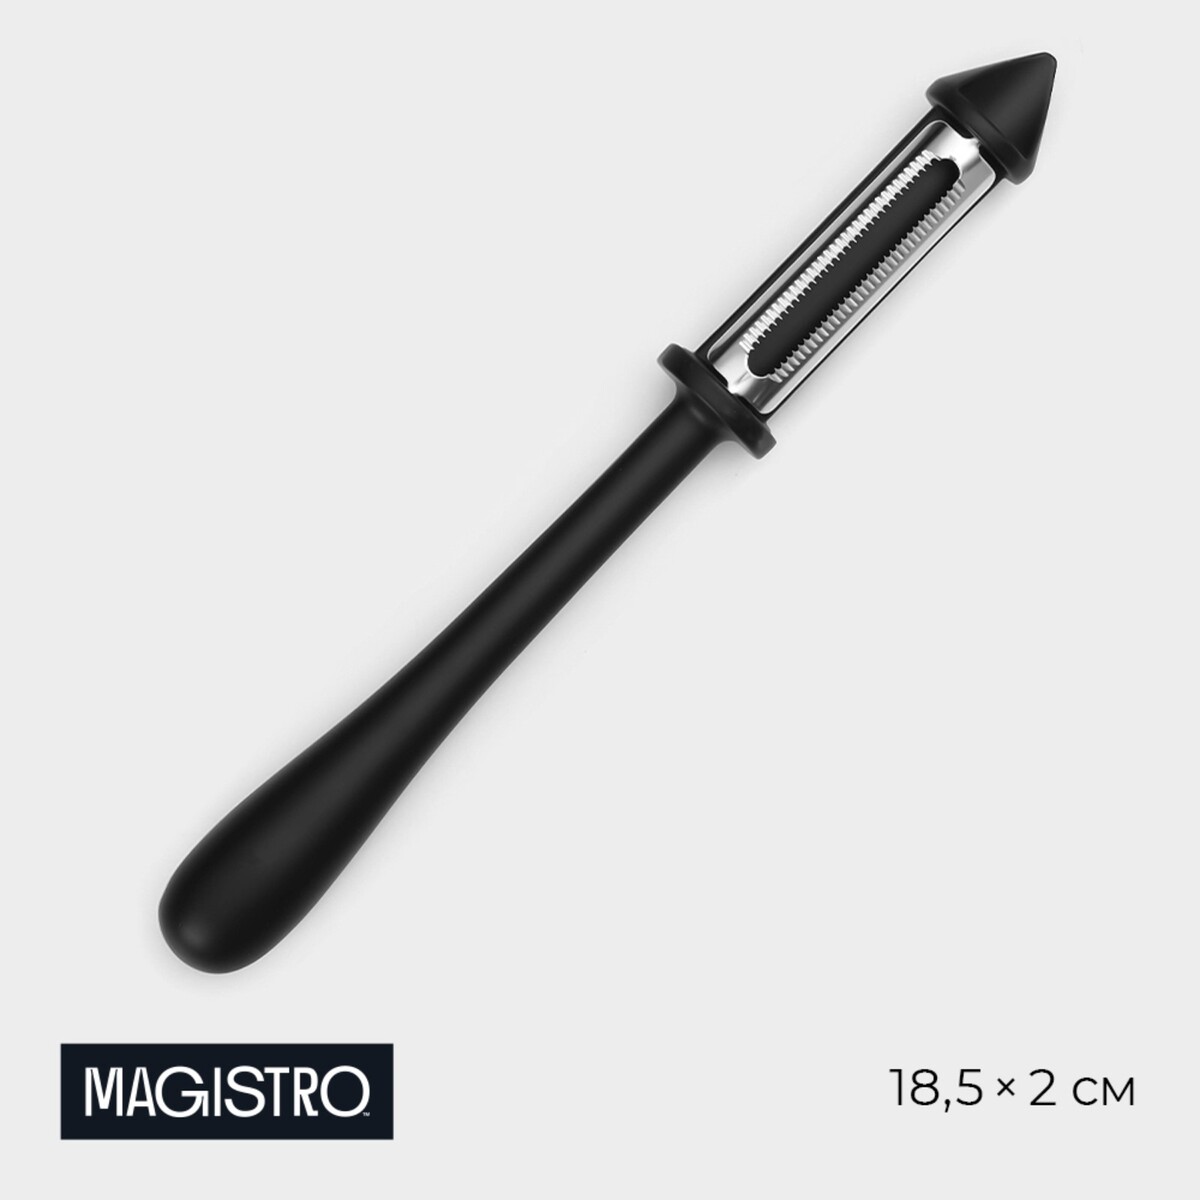 Овощечистка magistro vantablack, 18,5×2 см, многофункциональная, цвет черный скамья многофункциональная onlitop от 003